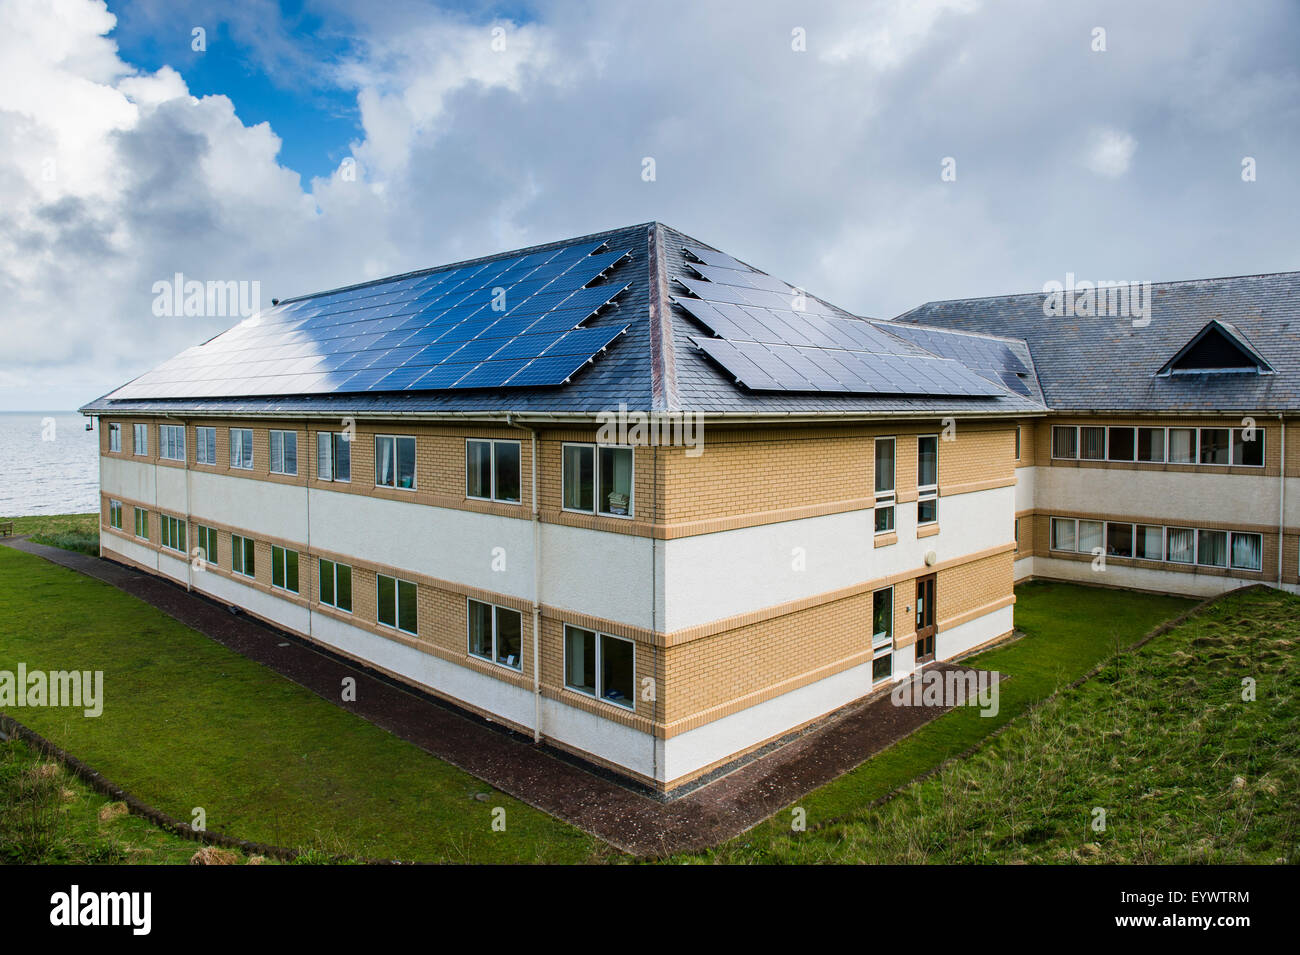 Pannelli solari installati in violazione della loro pianificazione regole e linee guida sul tetto della sede di Ceredigion County Council, Aberaeron Wales UK., giovedì 7 maggio 2015 Foto Stock